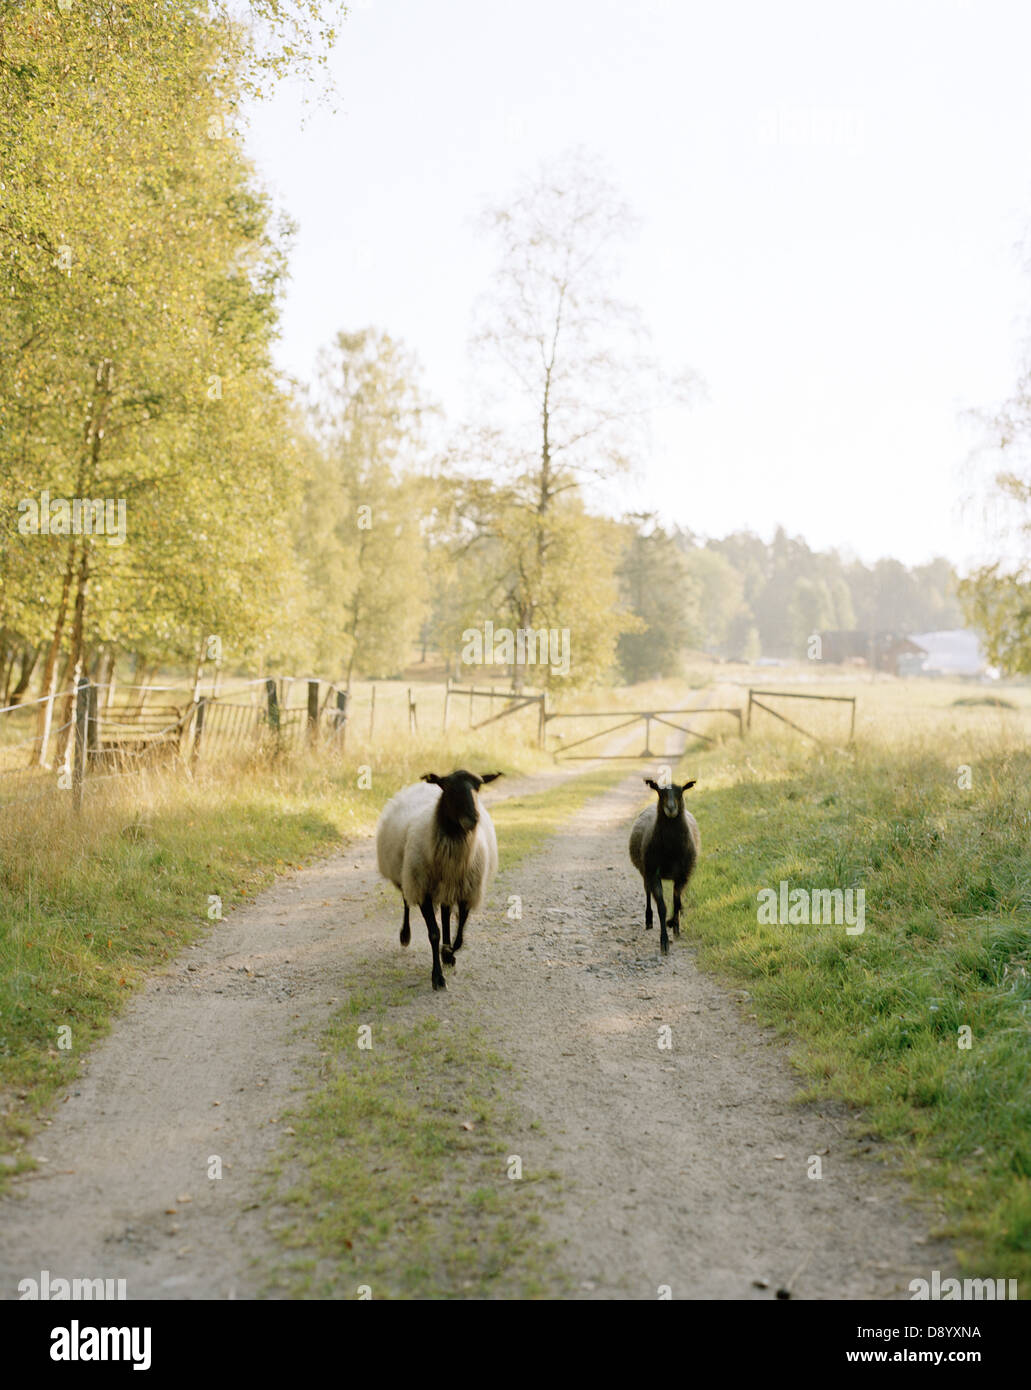 Deux moutons d'exécution sur une route de campagne. Banque D'Images